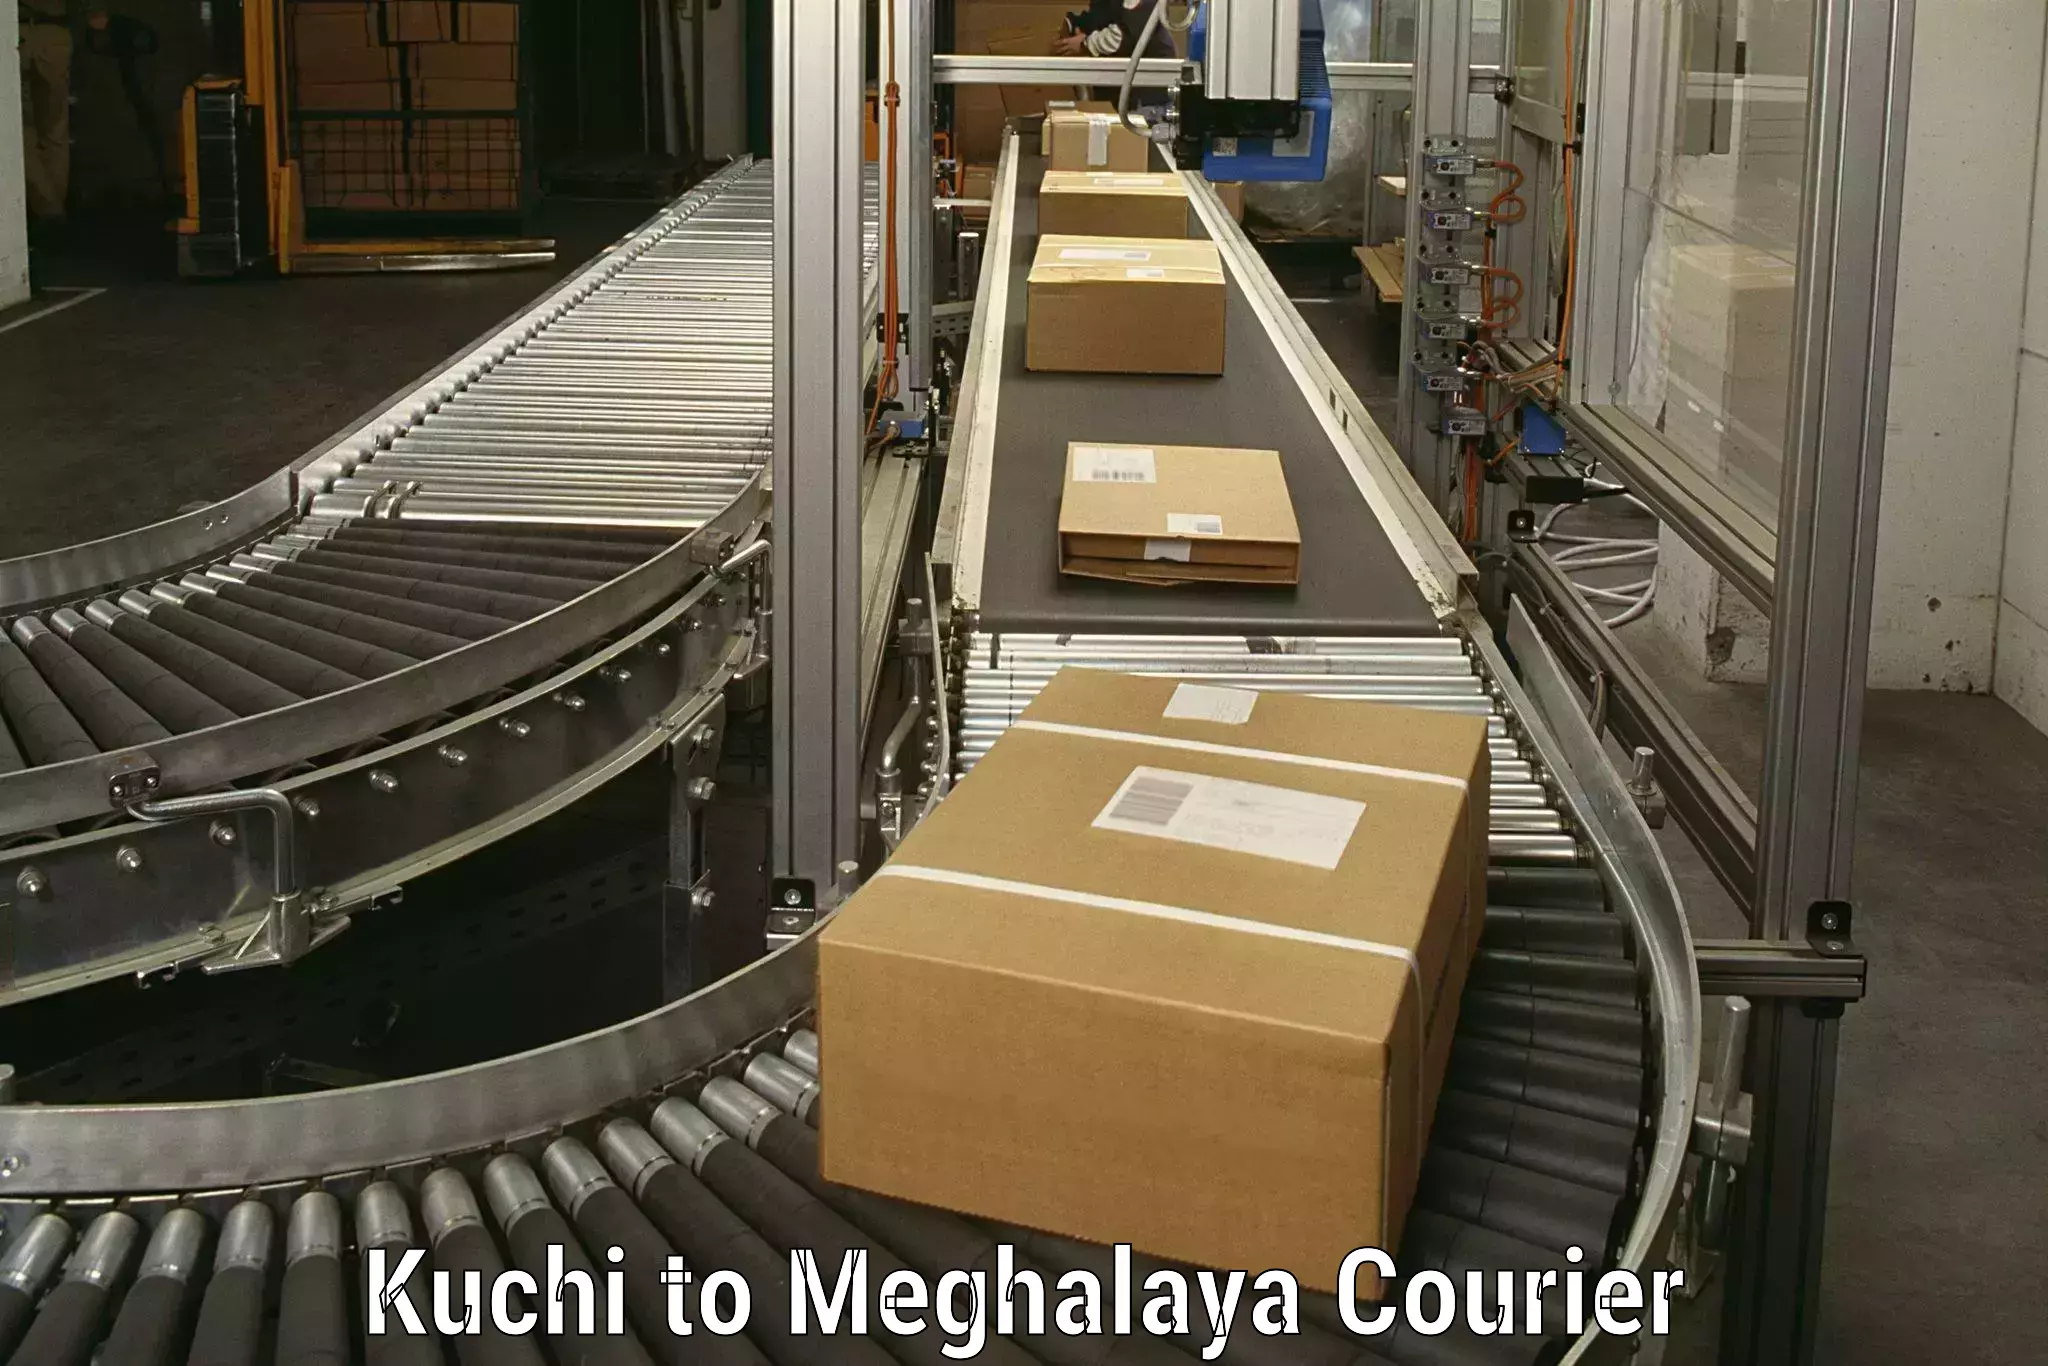 Customized household moving Kuchi to Meghalaya